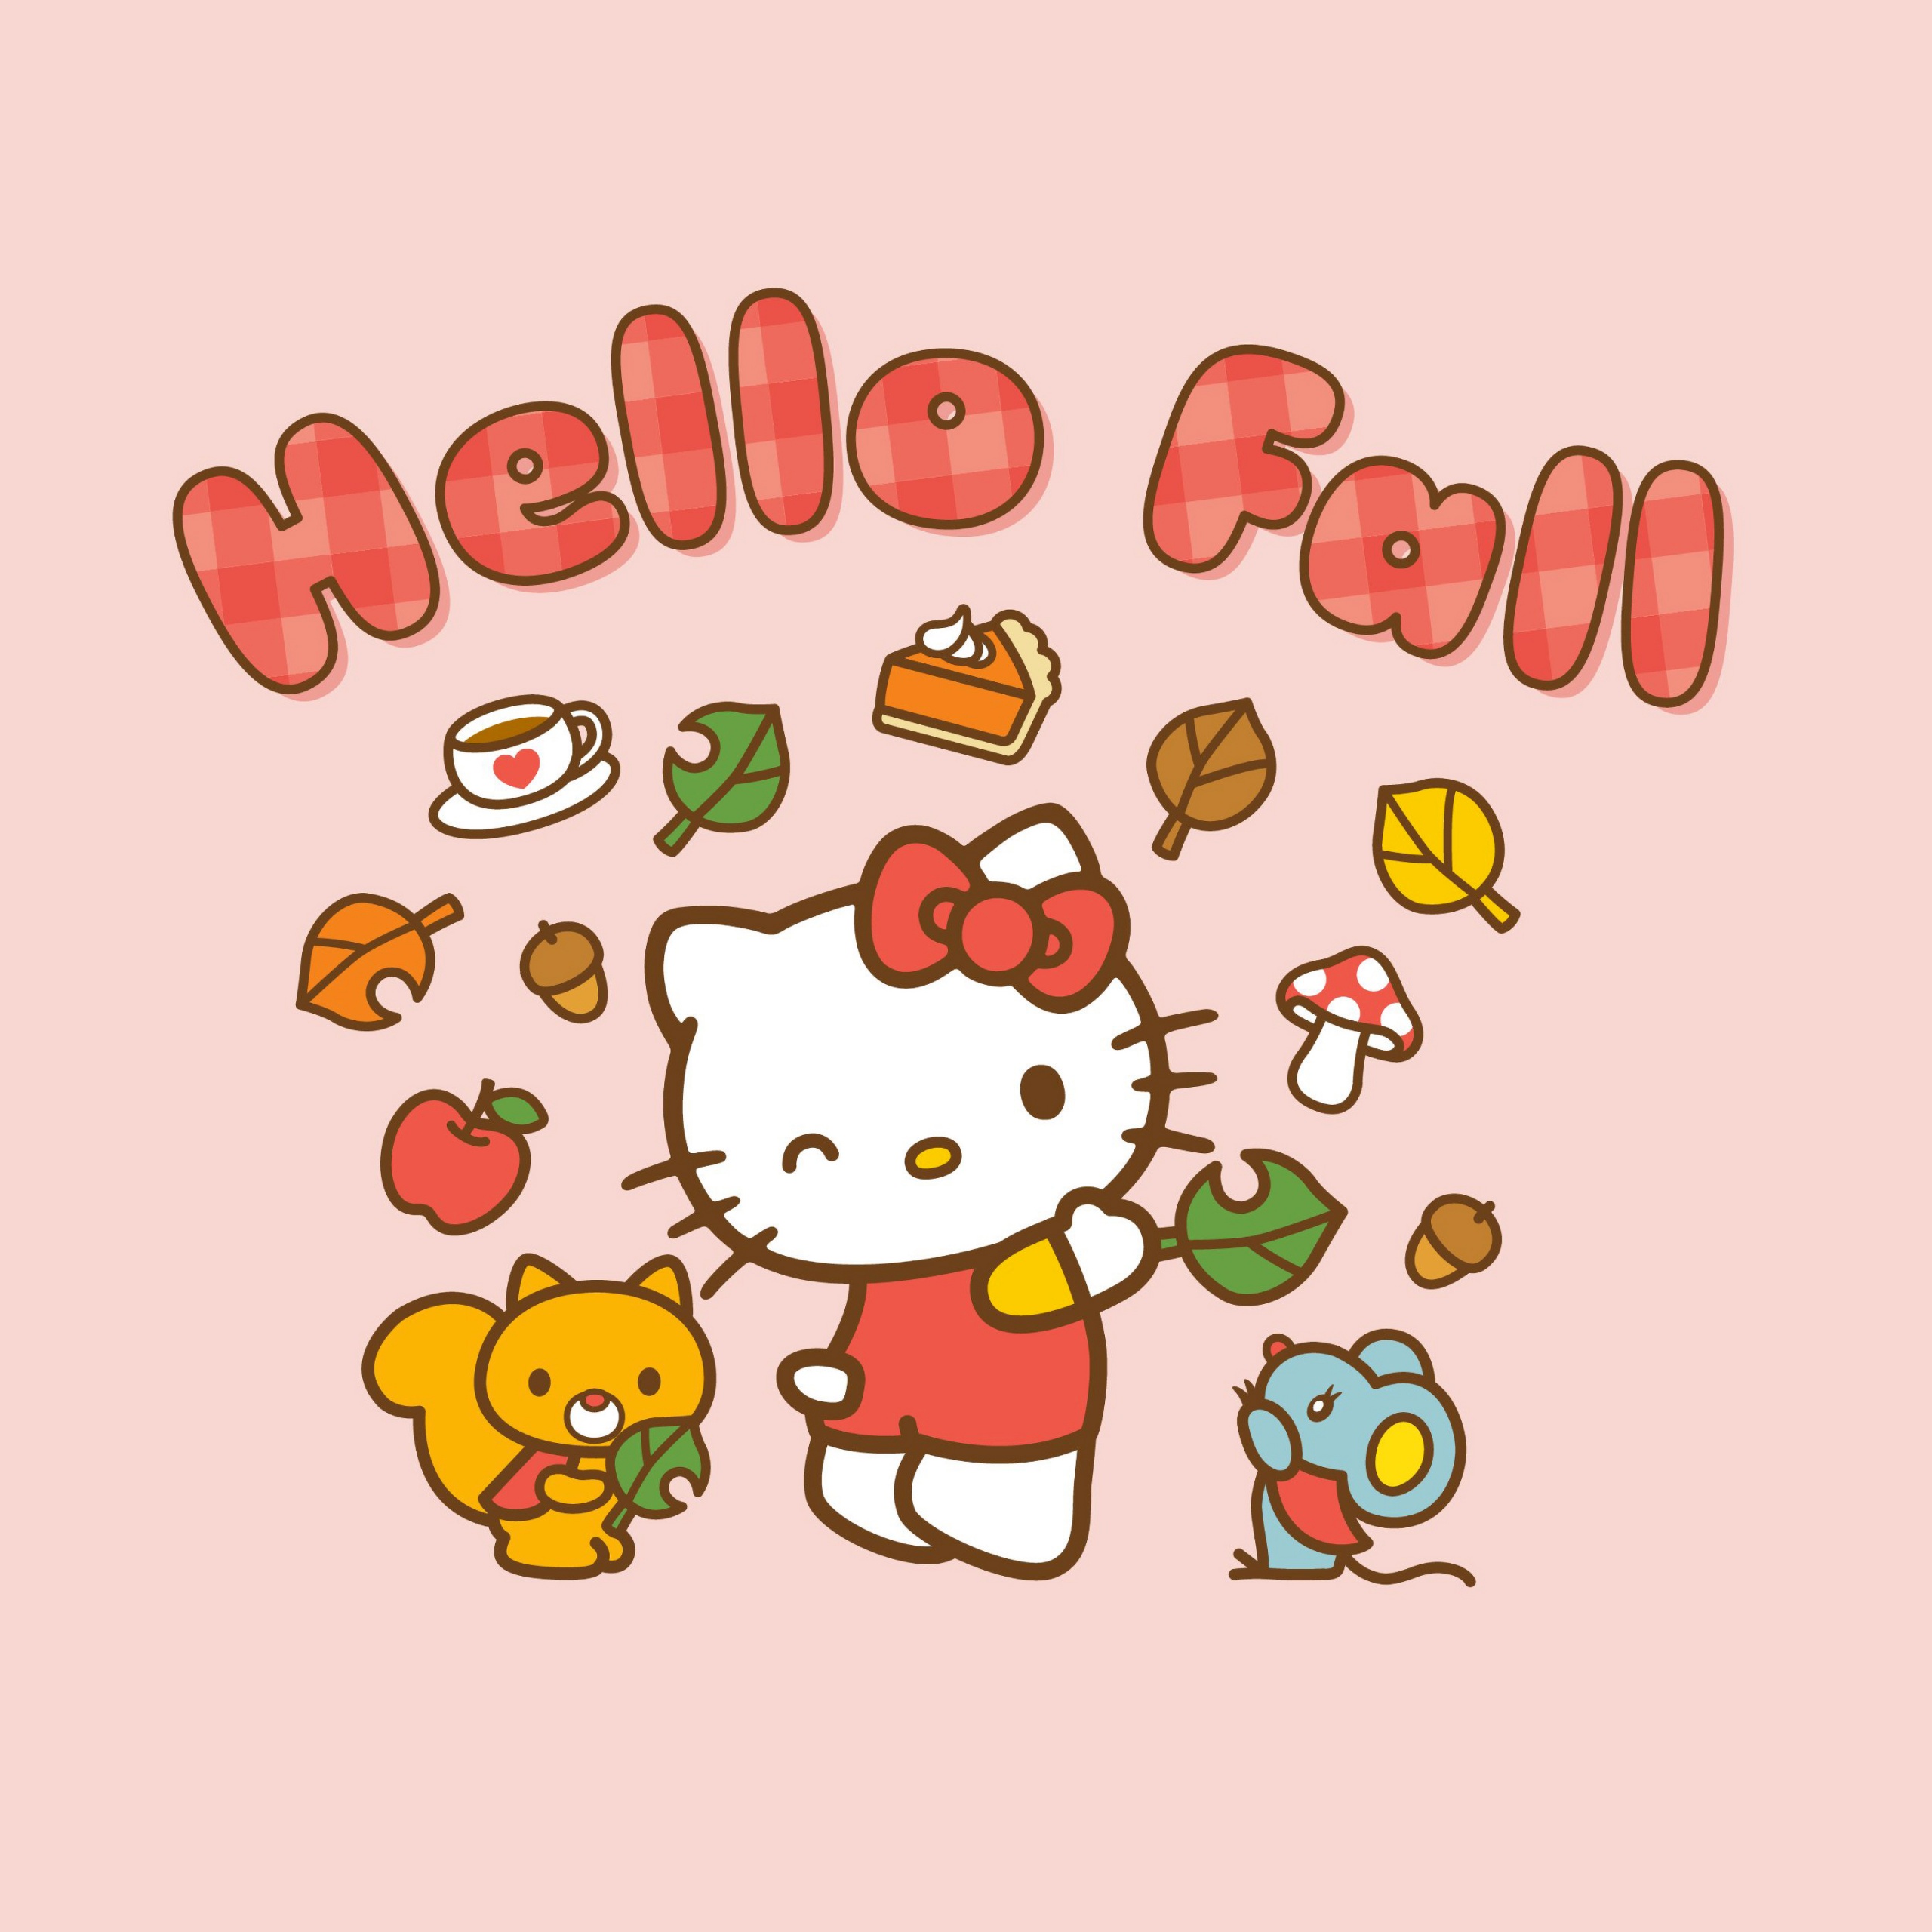 Hello Kitty Aesthetic Wallpaper